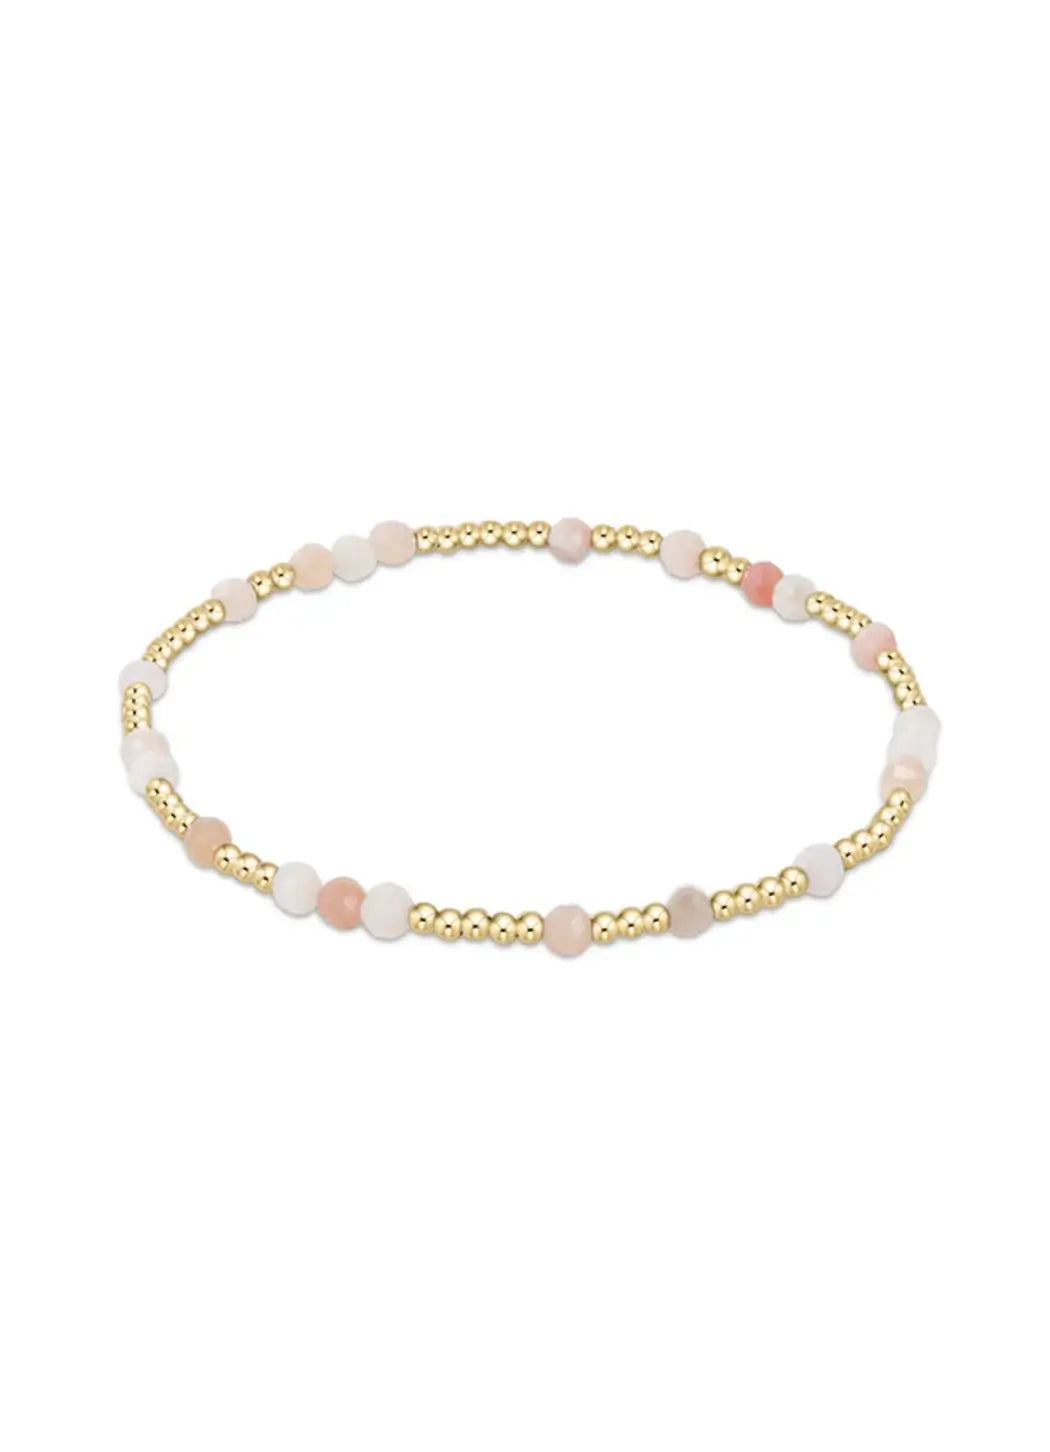 Enewton Hope Unwritten Gemstone Bracelet - Pink Opal